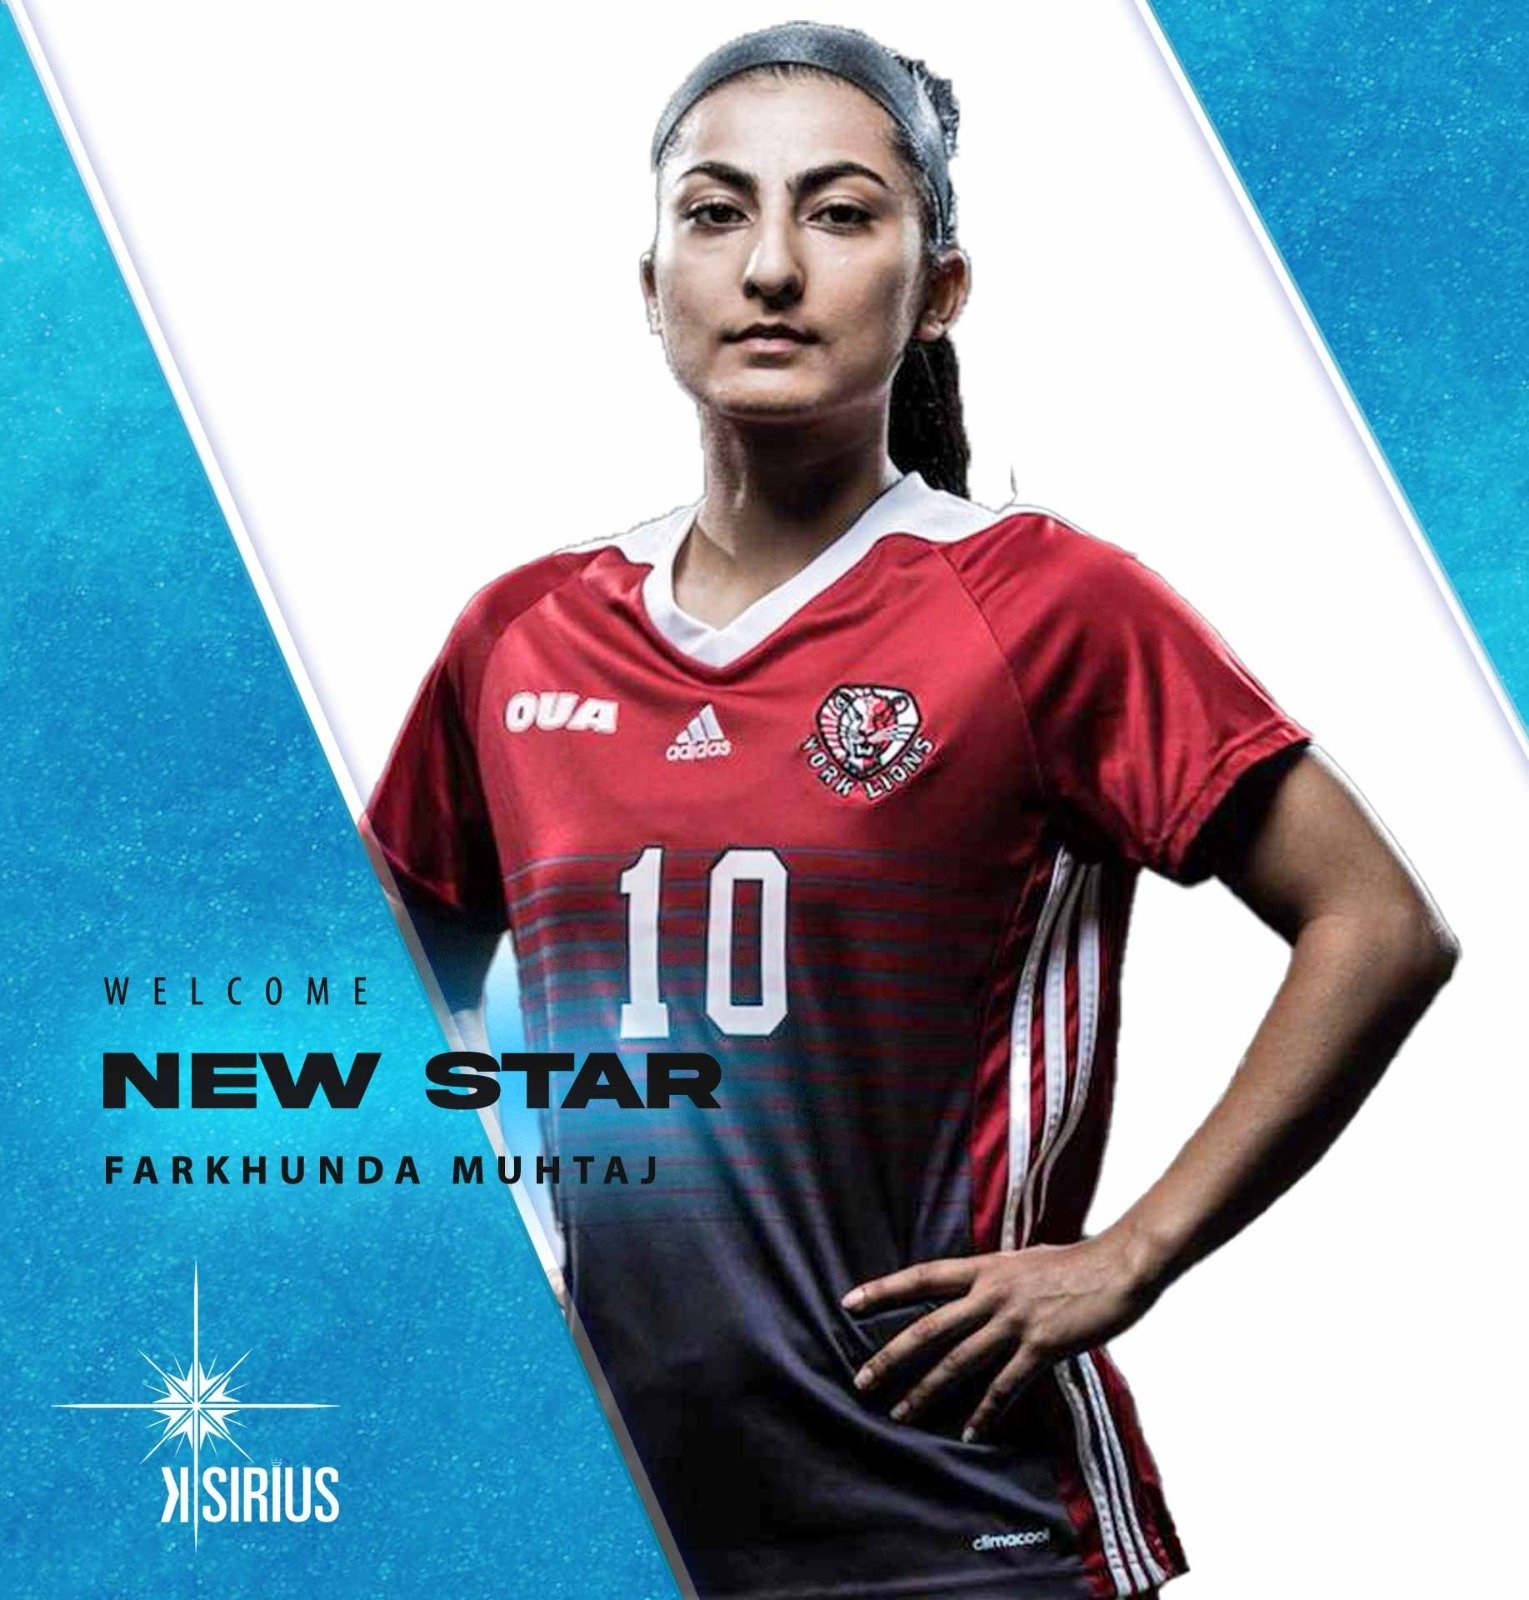 New Star: Farkhunda Muhtaj